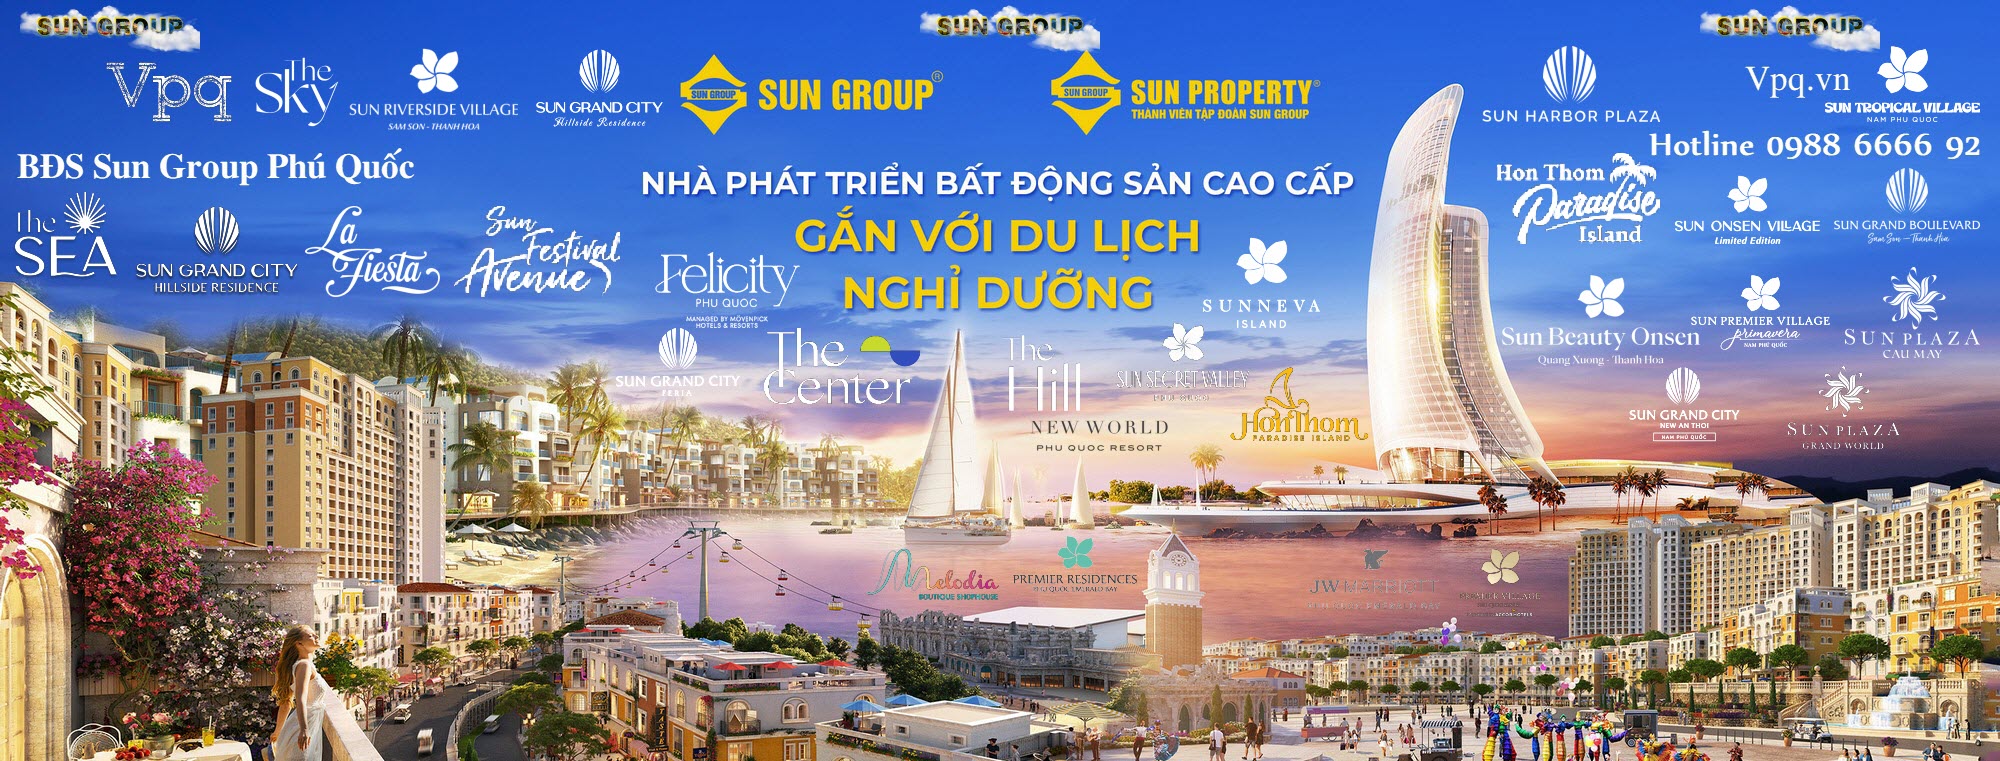 Các thương hiệu nghỉ dưỡng Sun Group tại Phú Quốc